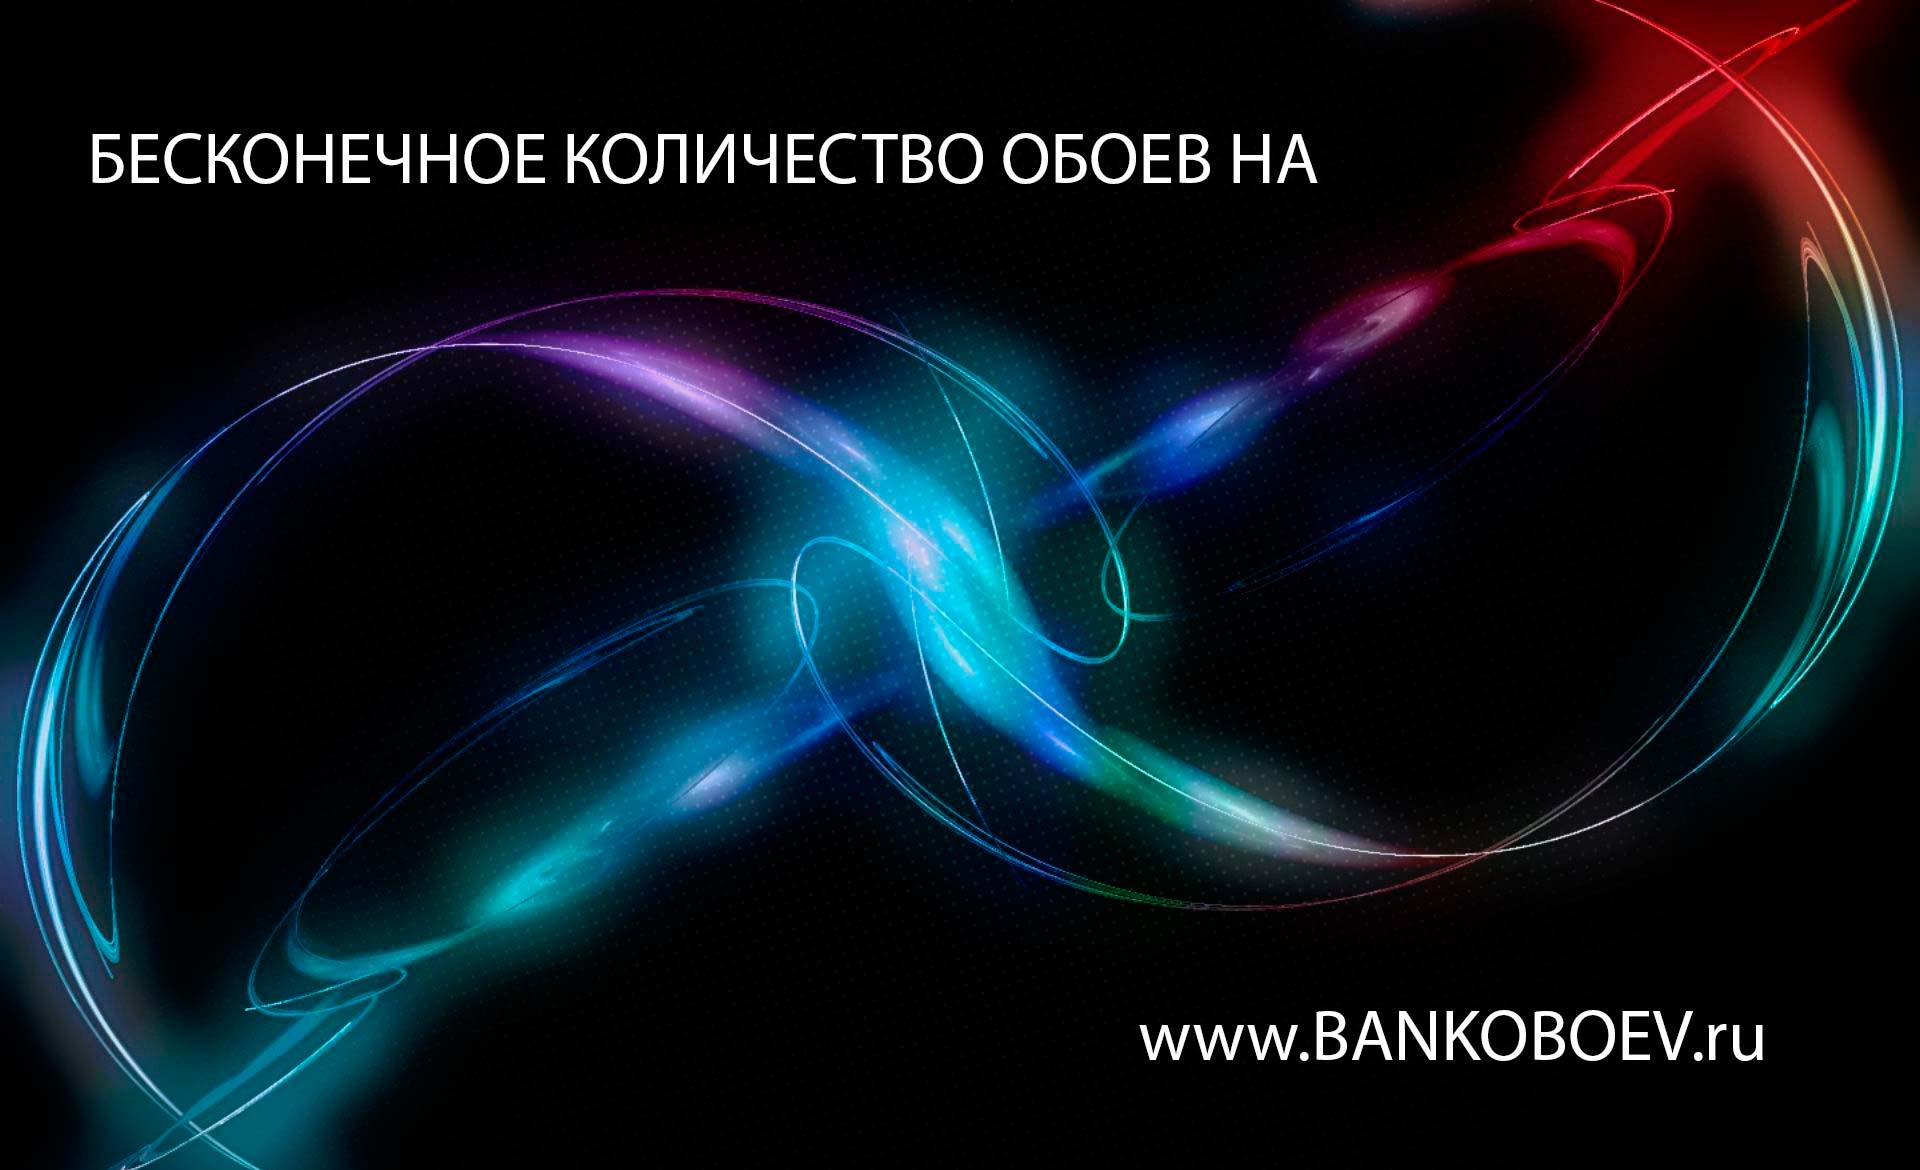 Bankoboev Ru Image Mtm0odc5 Jpg